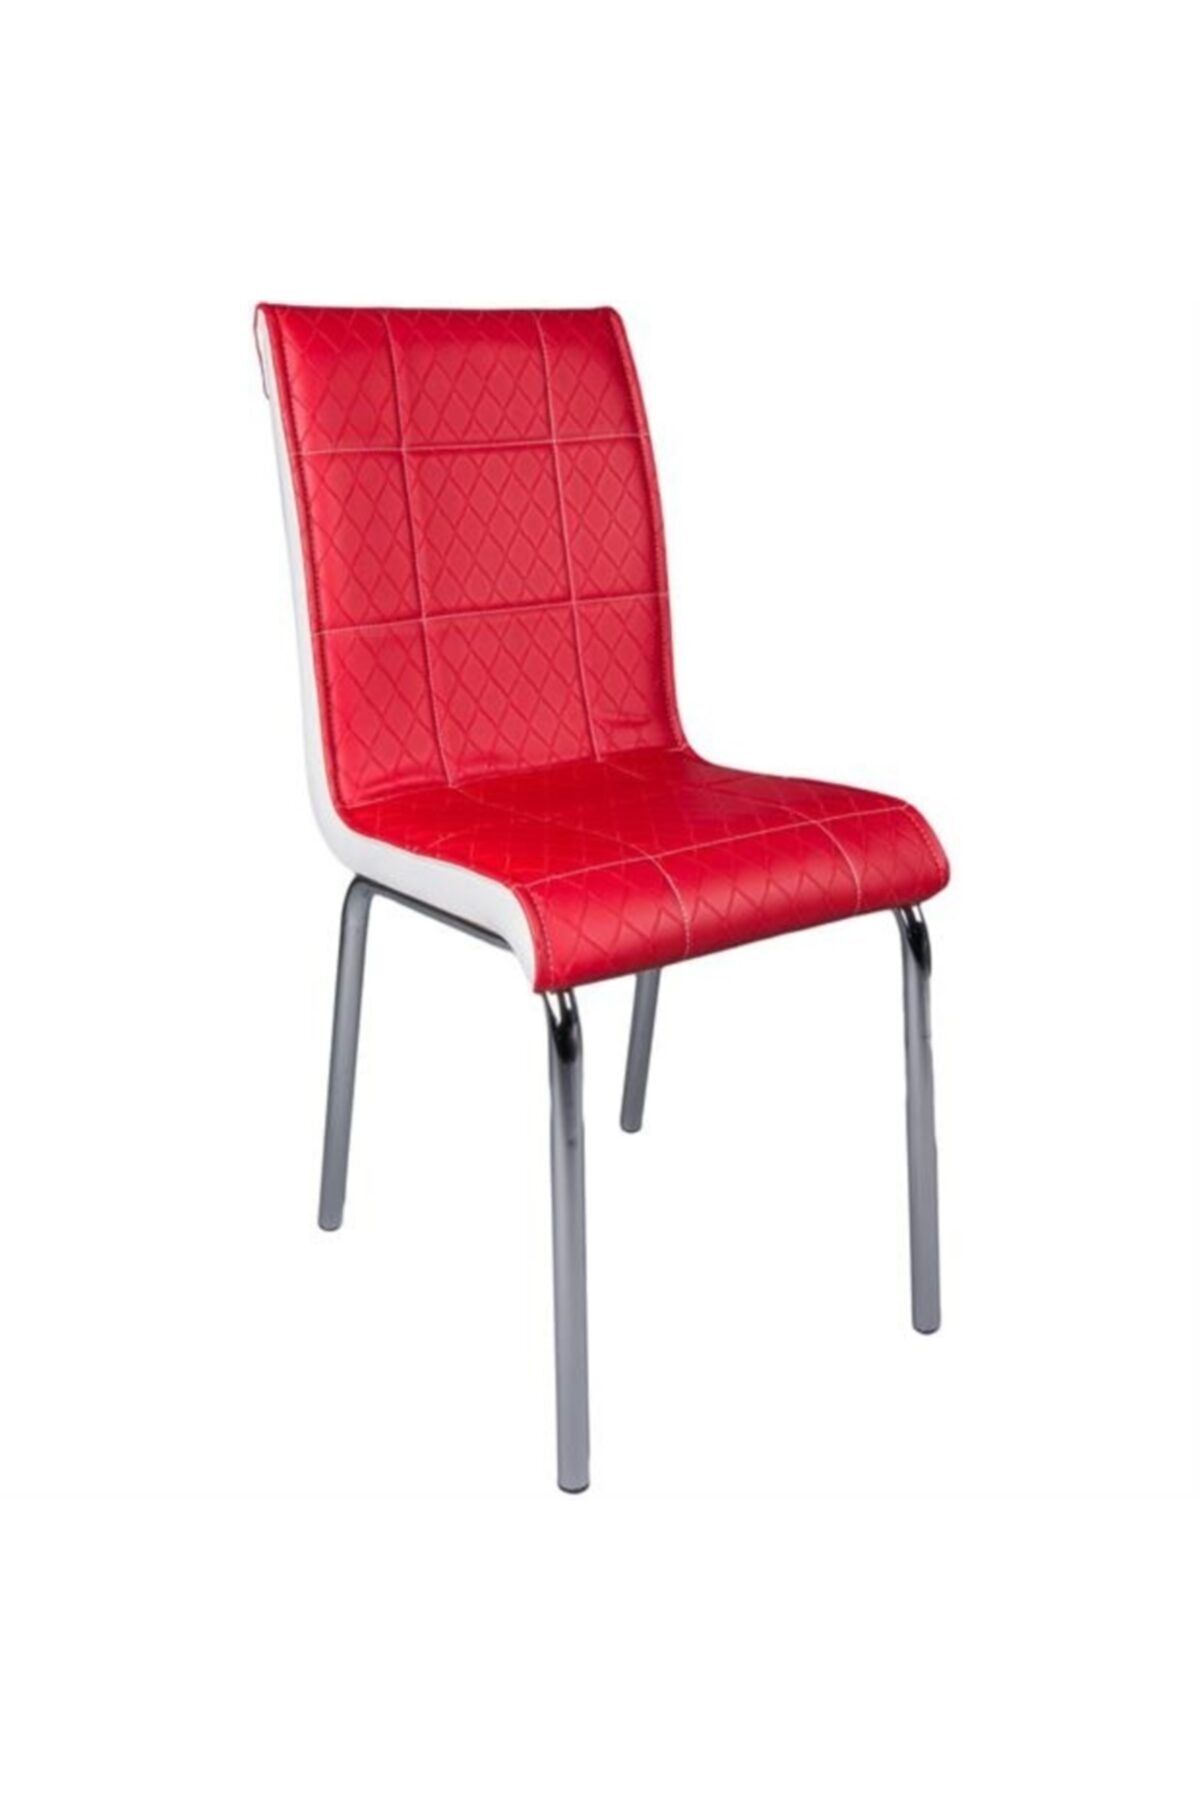 Evistro Paslanmaz Krom Ayaklı Balkon Ve Mutfak Sandalyesi 6 Adet Kırmızı